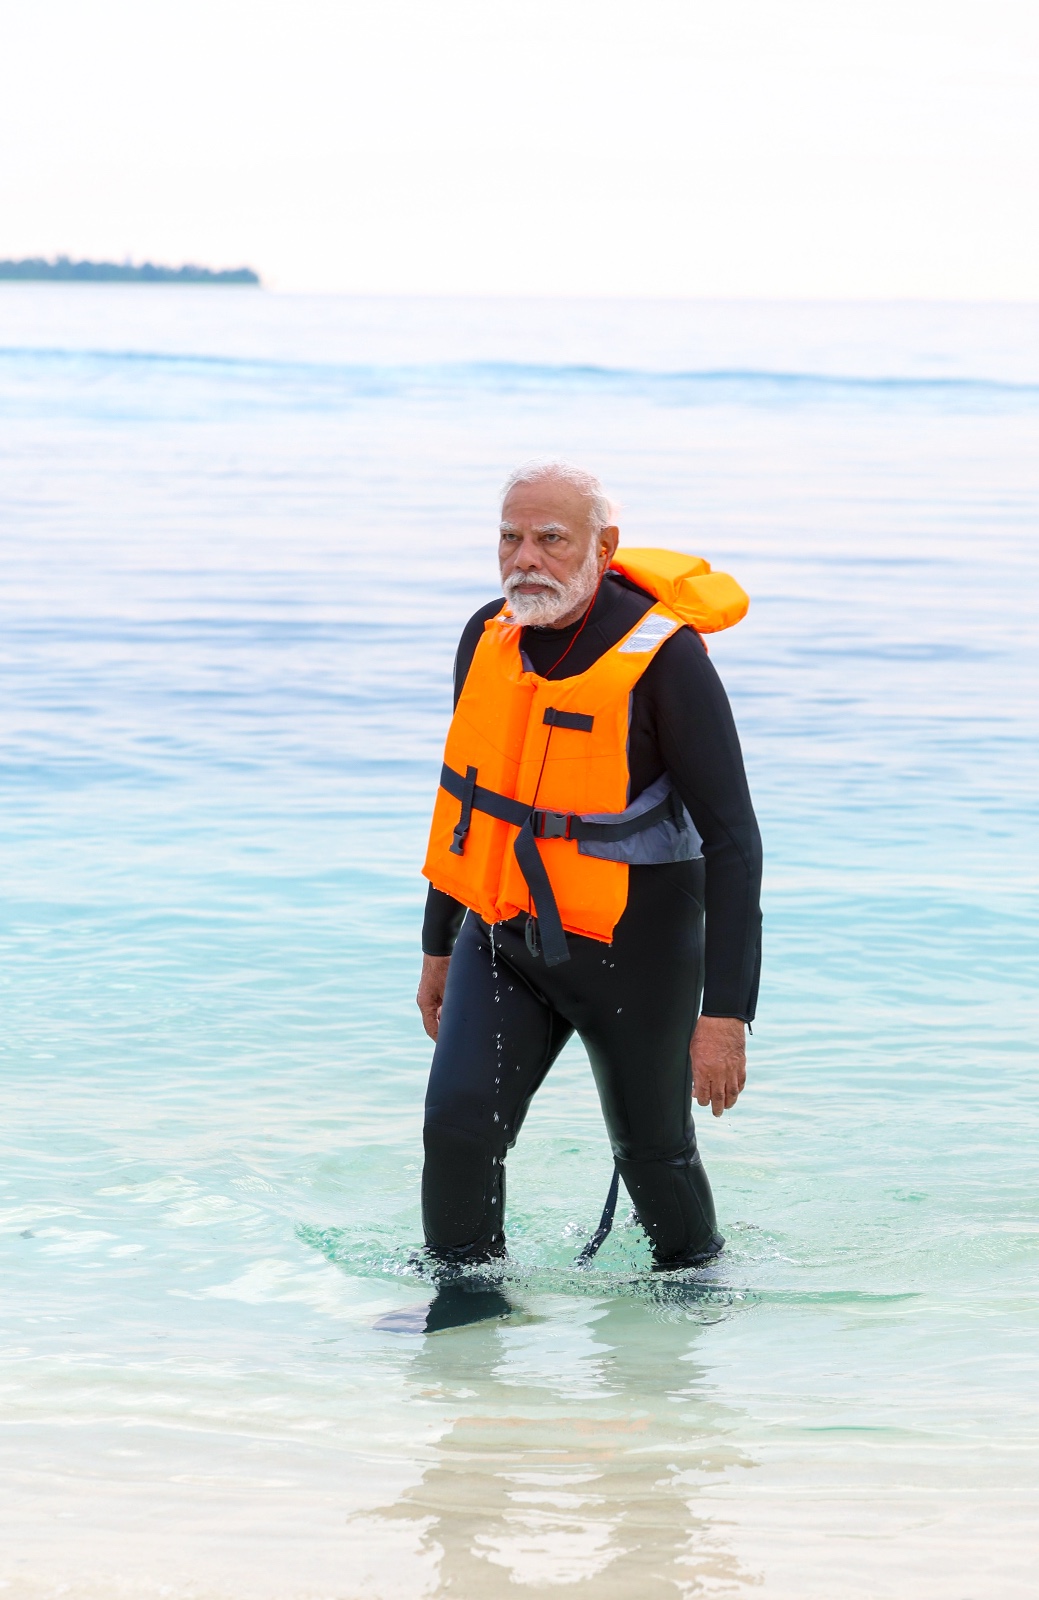 प्रधानमंत्री नरेंद्र मोदी मंगलवार और बुधवार को तमिलनाडु, केरल और लक्षद्वीप के दौरे पर थे। इस दौरान उन्होंने लक्षद्वीप में समुद्र किनारे सैर की और अपने इस अनुभव को तस्वारों के द्वारा अपने सोशल मीडिया अकाउंट पर शेयर भी किया।